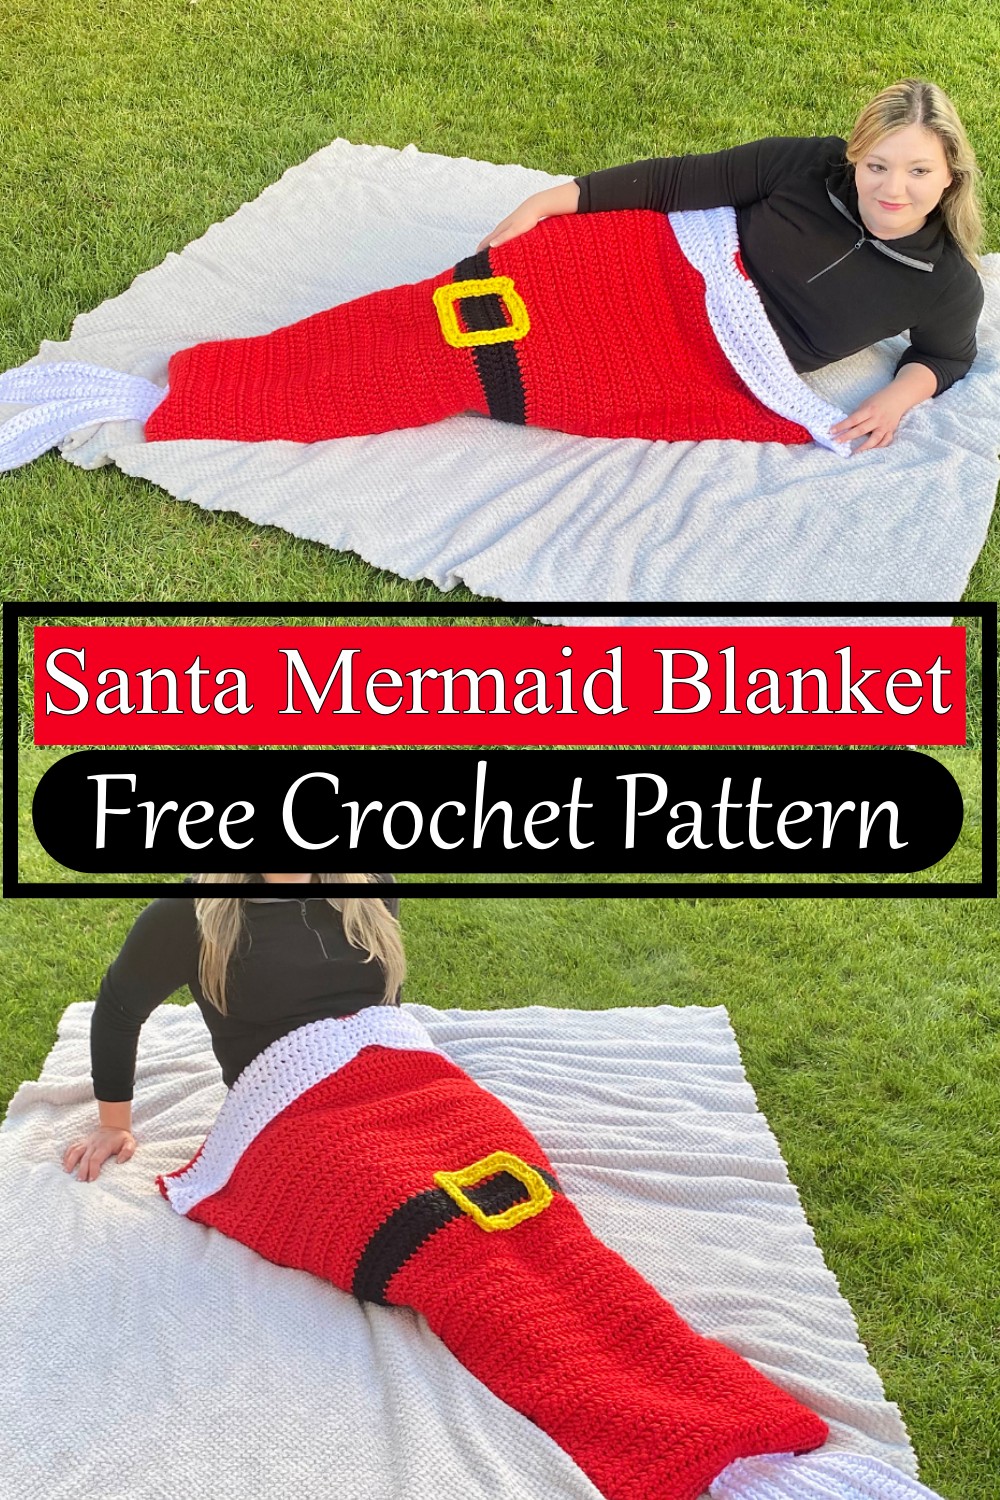 Santa Mermaid Blanket